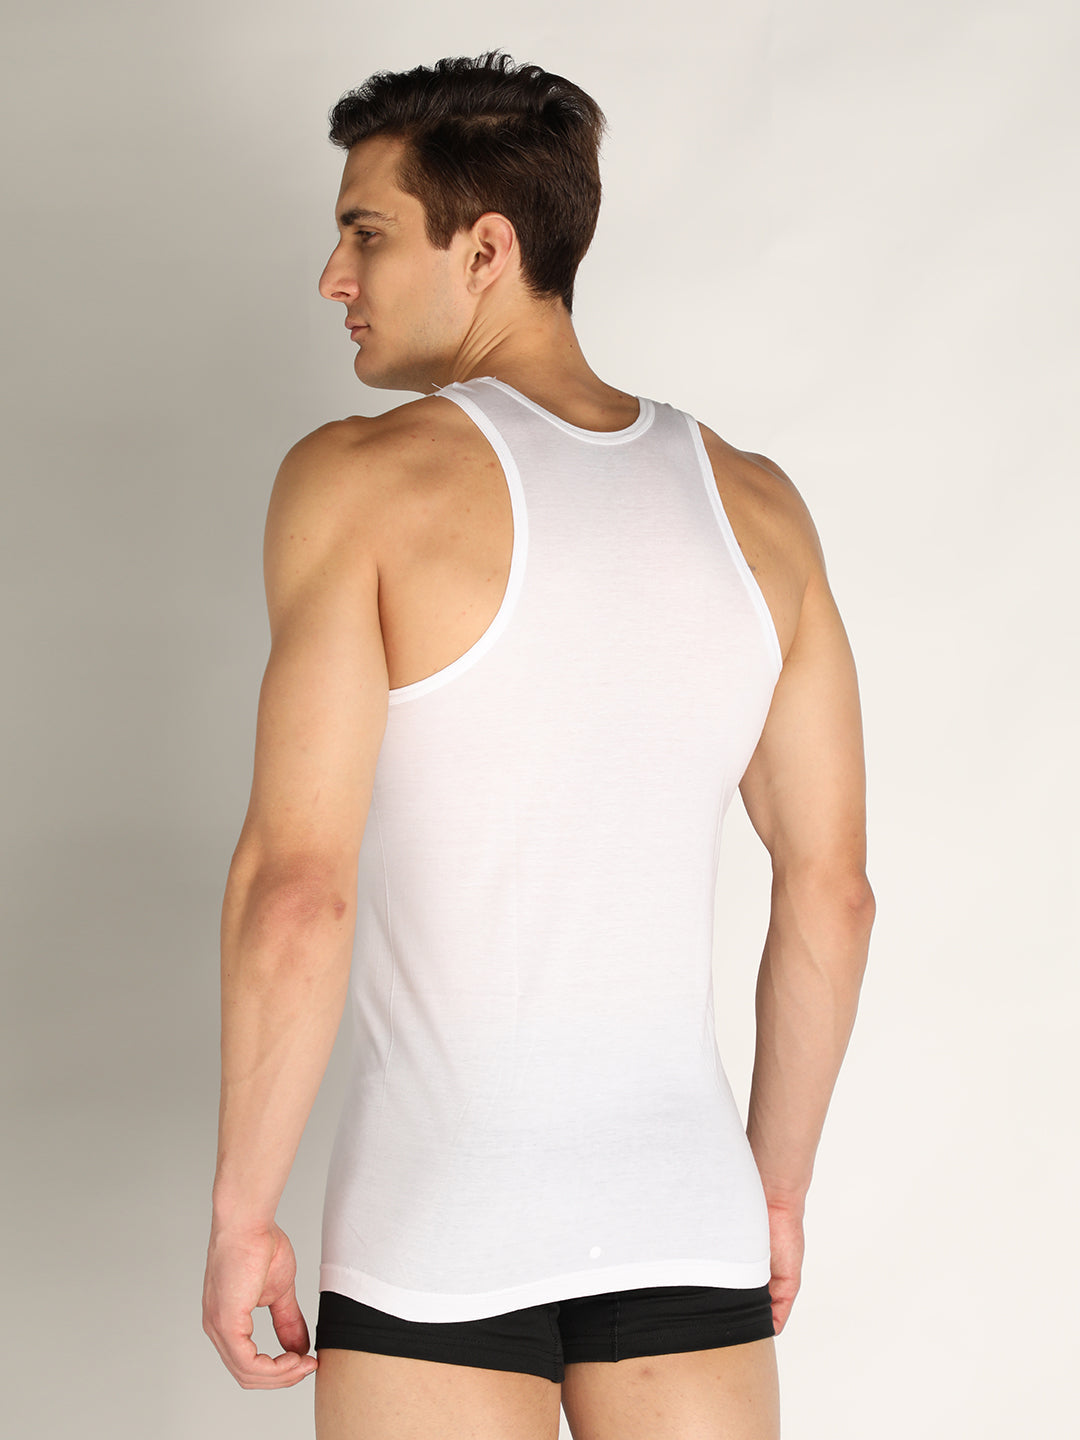 Neva Men's White Round Neck Sleeveless Super Soft Cotton Modal Base Innerwear Upper Banian Vest - Gym Vest for Men- Pack of 4 Pcs